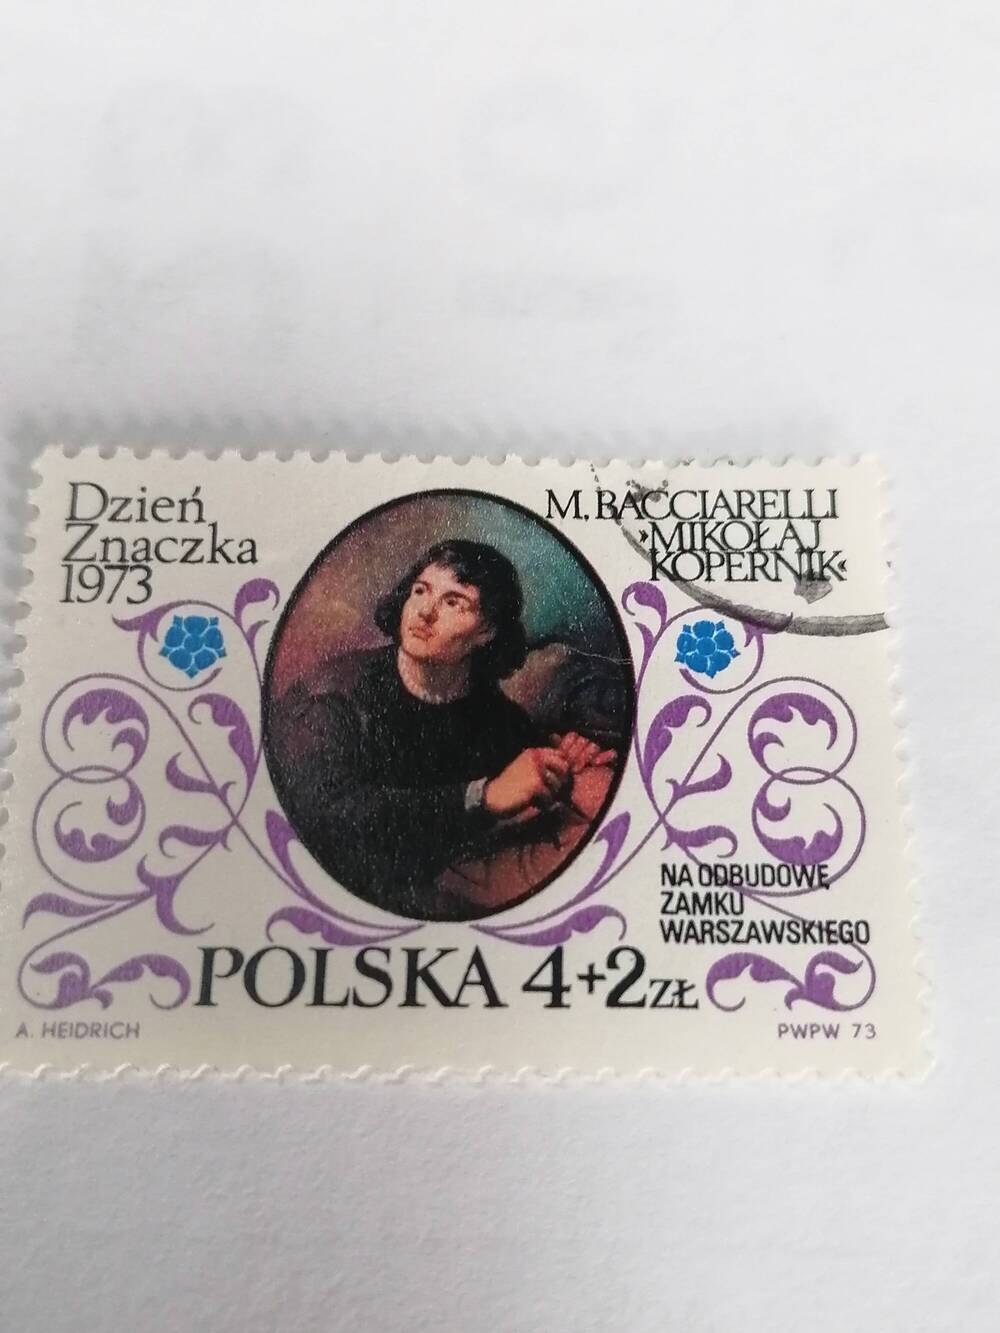 Марка почтовая негашеная, Polska,Польша,1973 г, M.Bocciarelli Mikolaj Kopernik